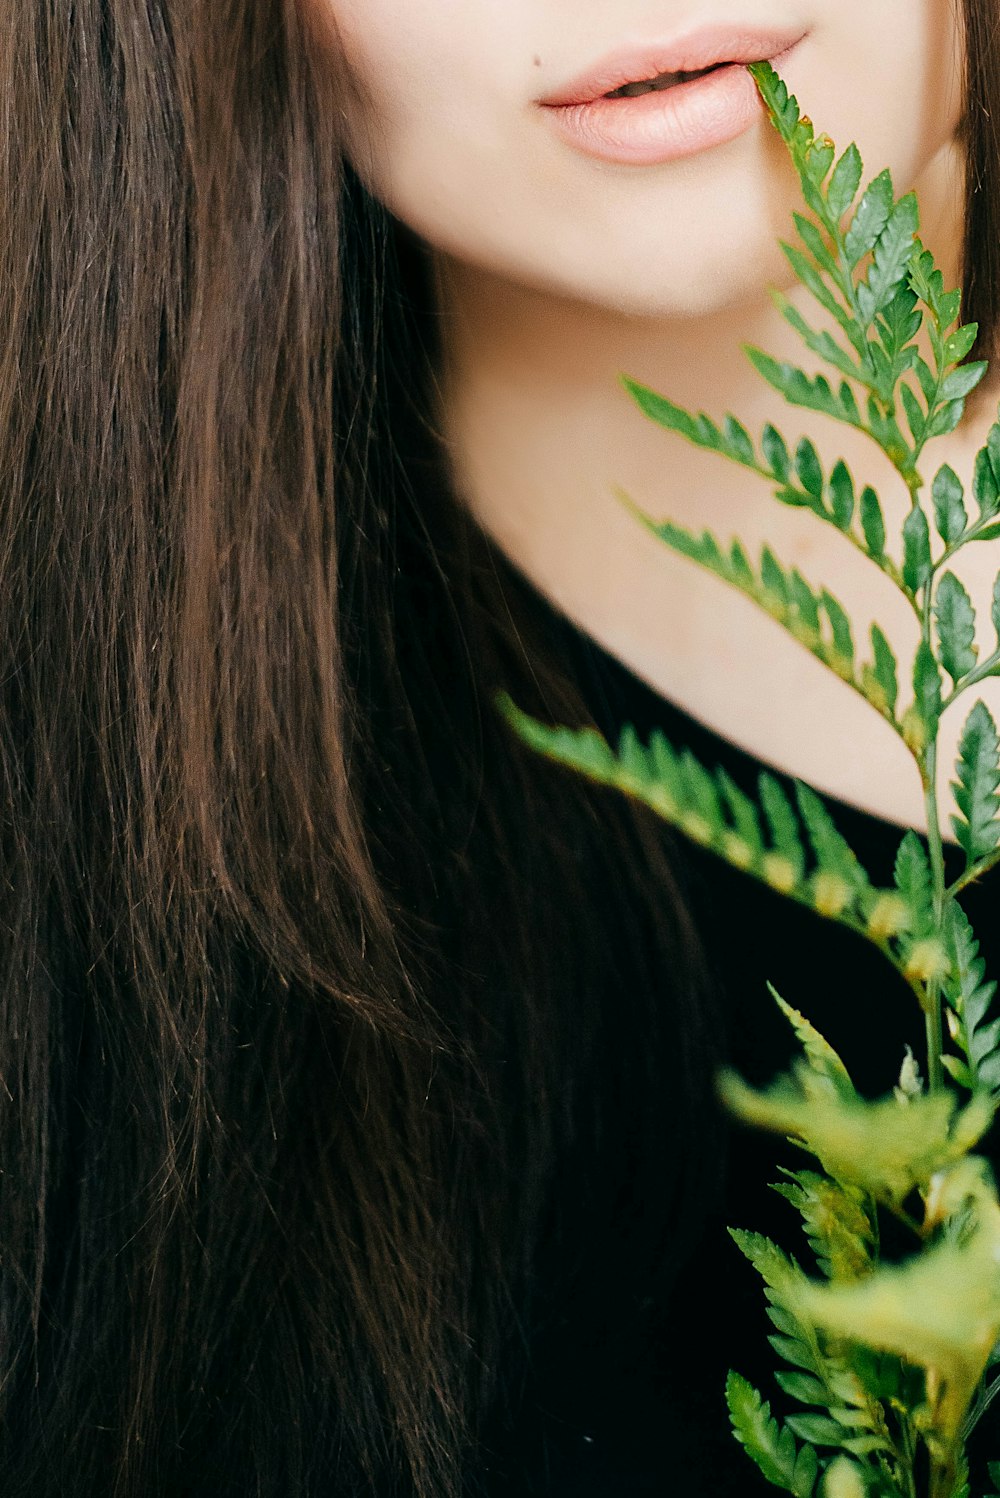 黒いトップと緑の葉の植物を身に着けている女性のクローズアップ写真